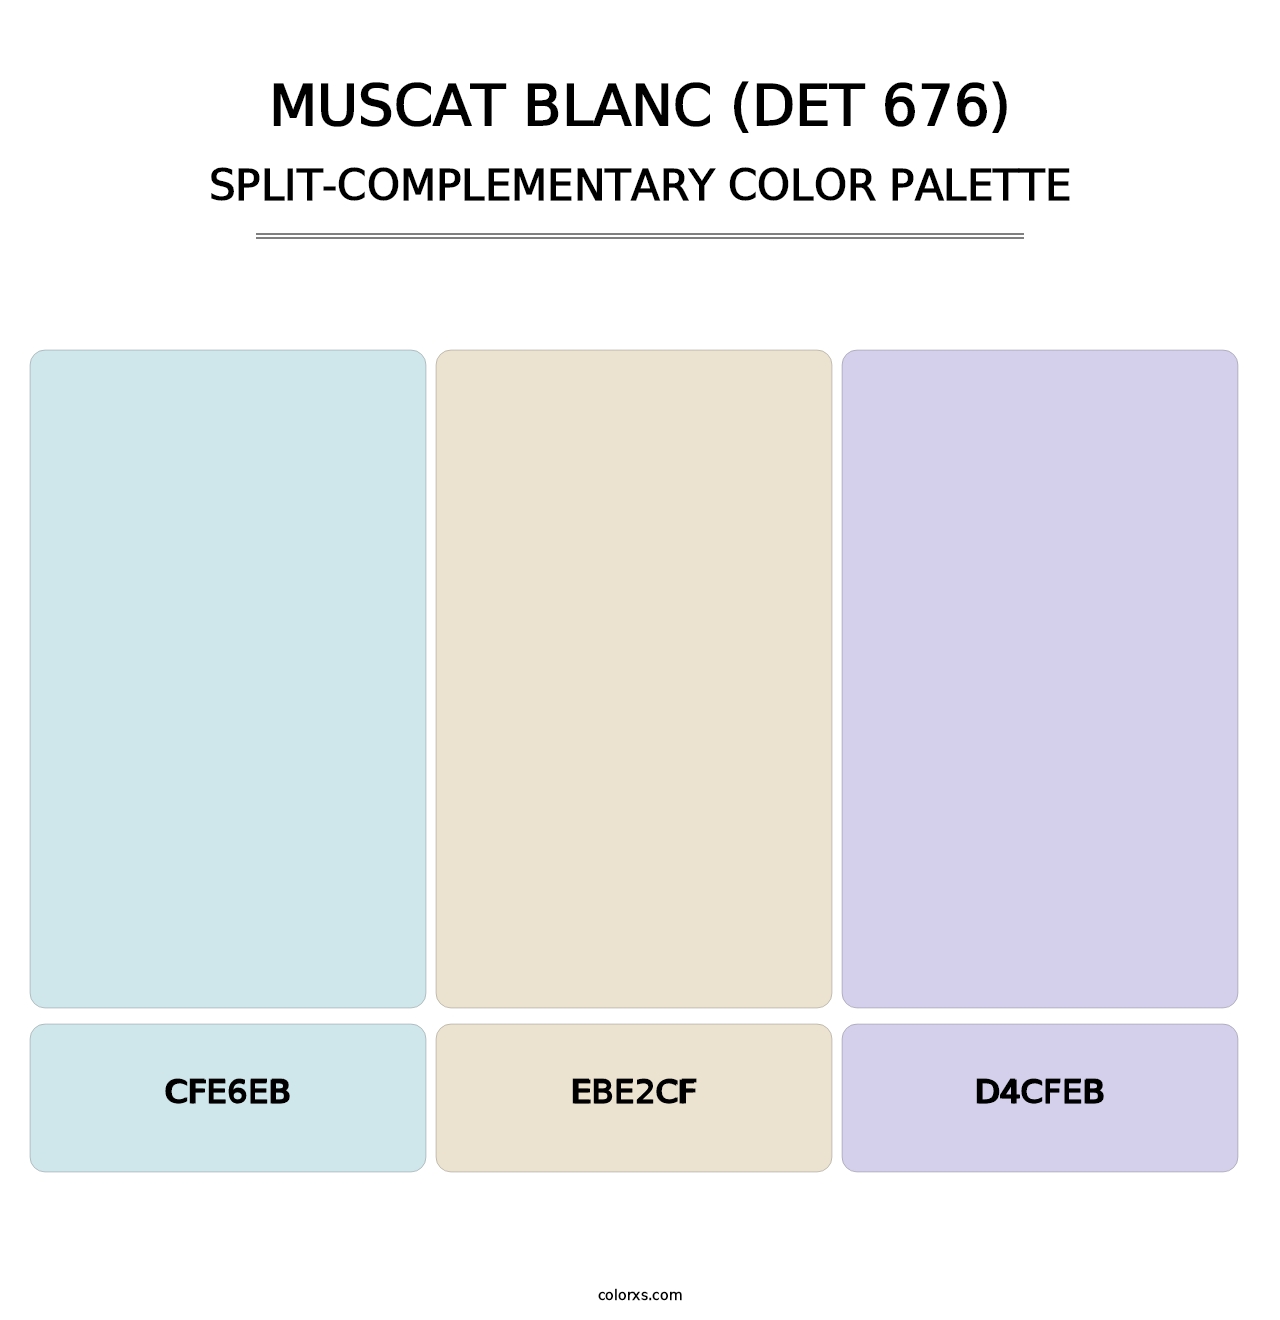 Muscat Blanc (DET 676) - Split-Complementary Color Palette